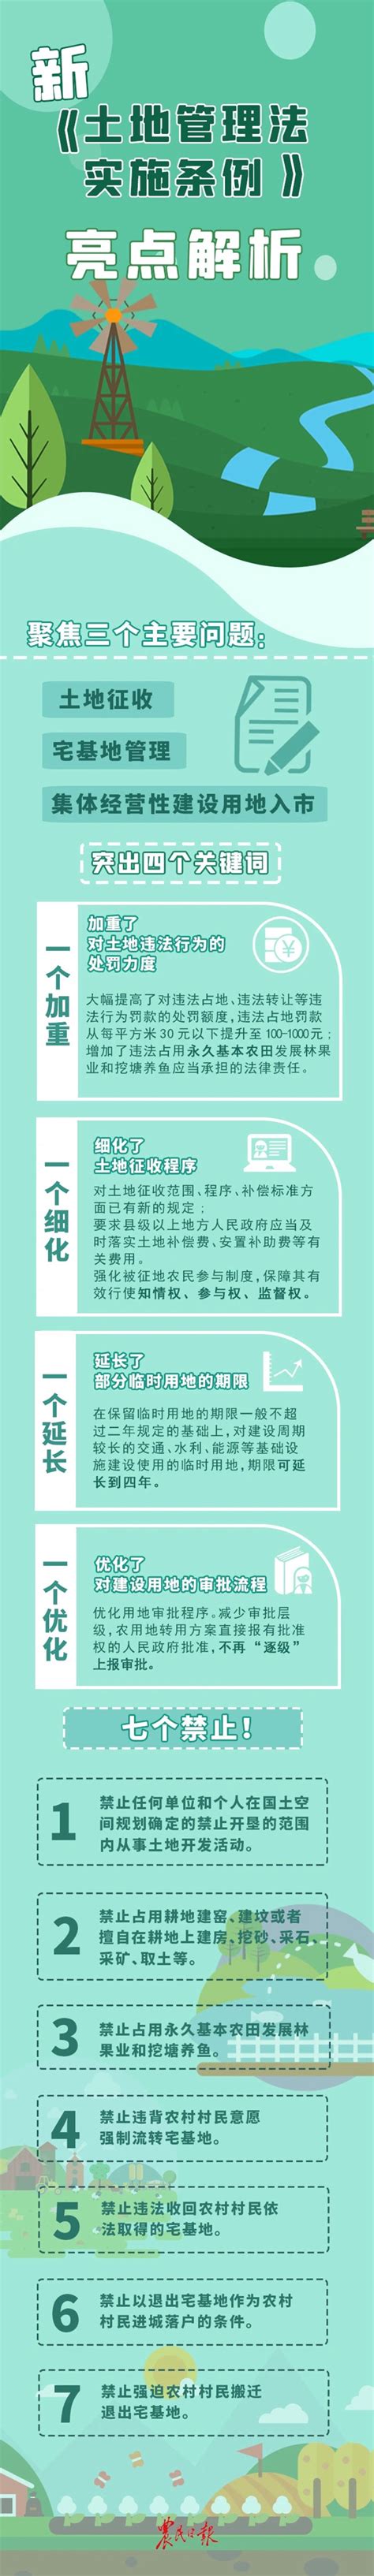 2023年河北省土地管理条例修订【全文】 - 地方条例 - 律科网